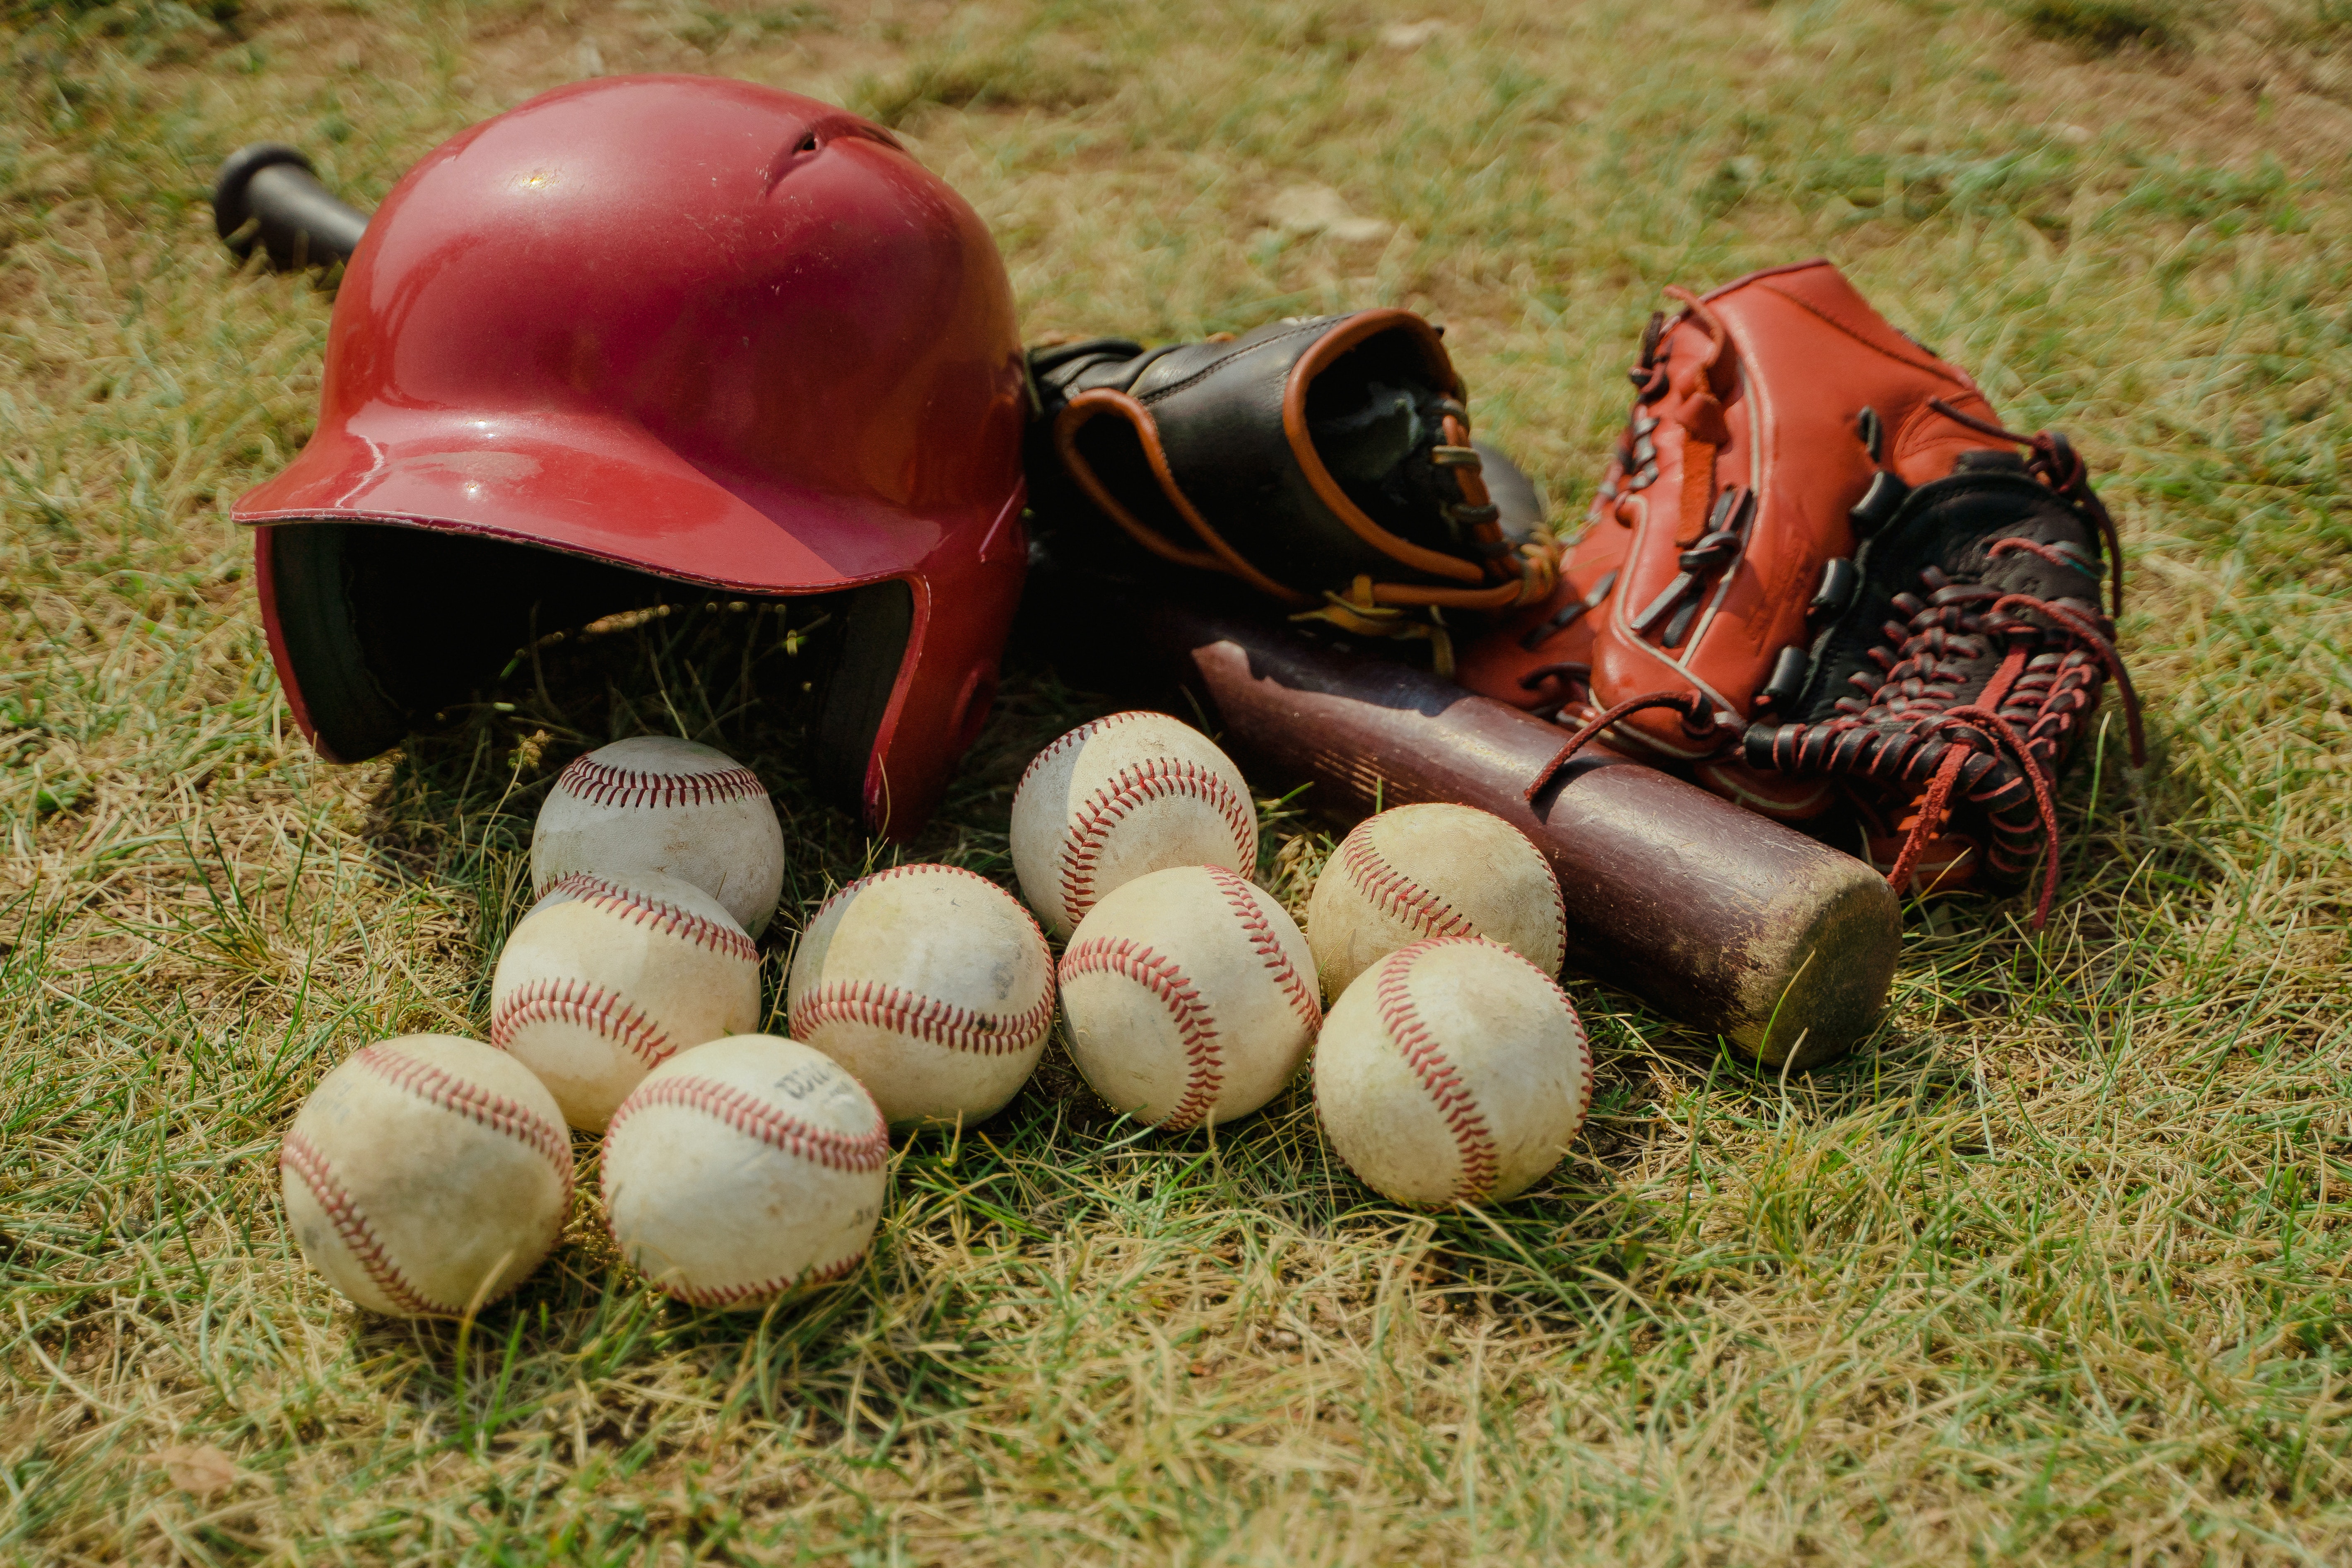 Baseballs, hat, gloves and bat